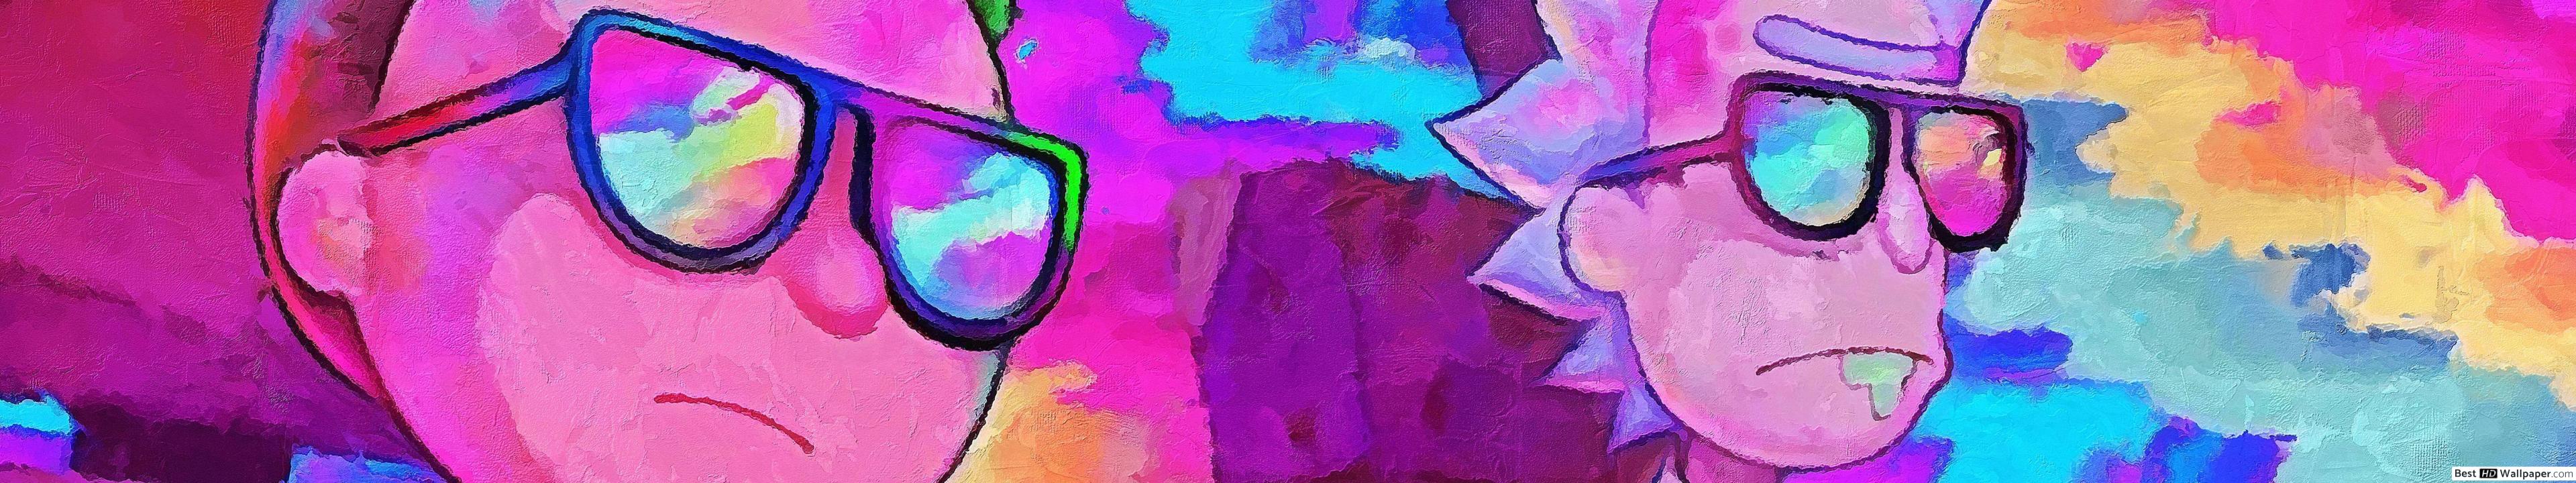 릭과 모티 벽지,보라색,제비꽃,페인트 등,현대 미술,미술